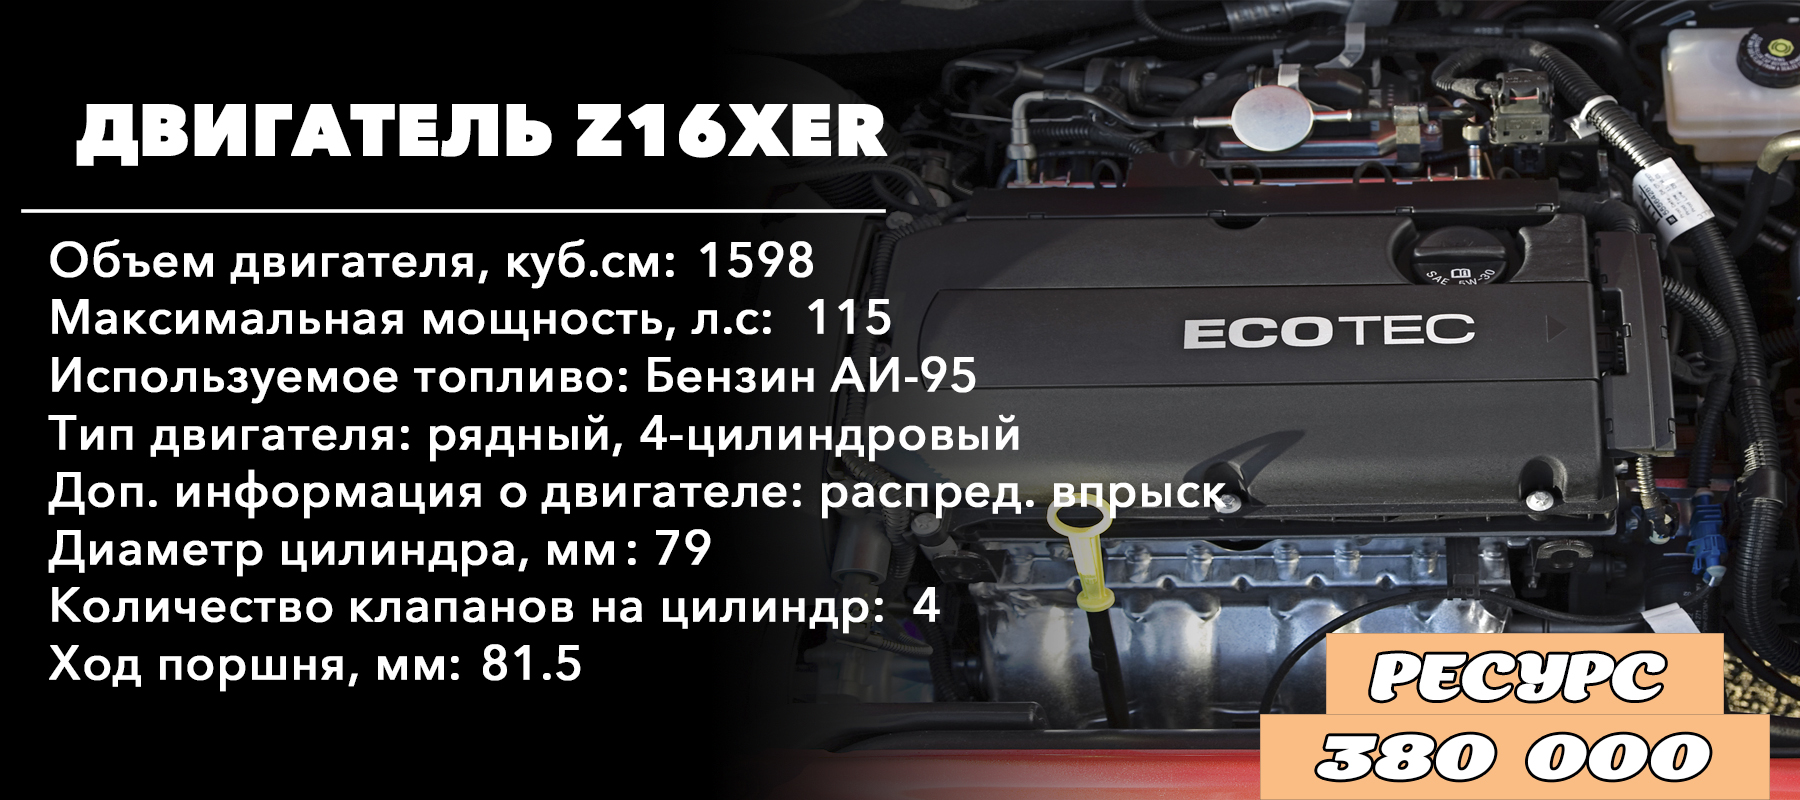 Ресурс двигателя 1.6 - Z16XER